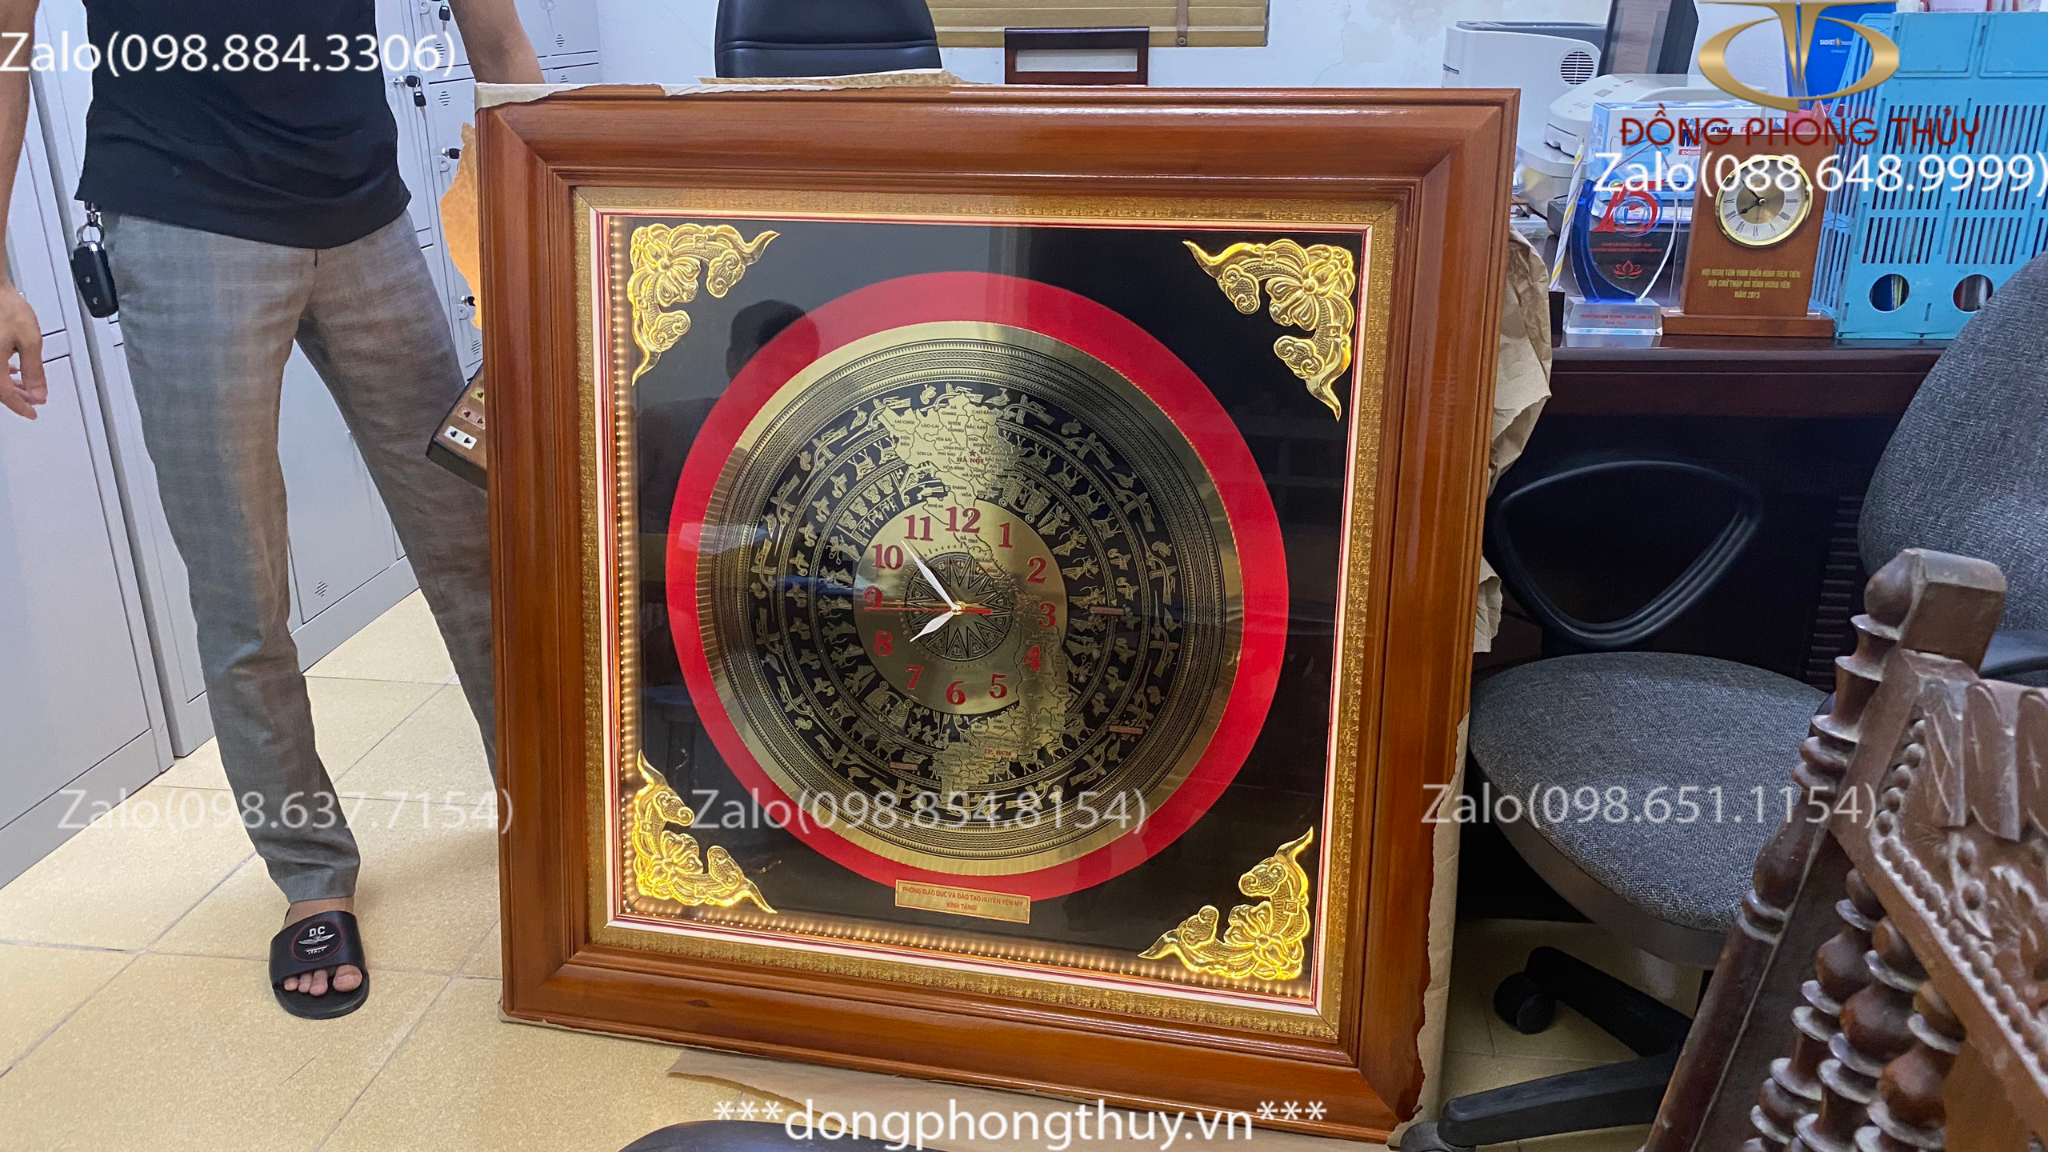 Đồng hồ mặt trống đồng bản đồ Việt Nam khung gỗ tần bì gắn đèn led mặt kính 102*102cm